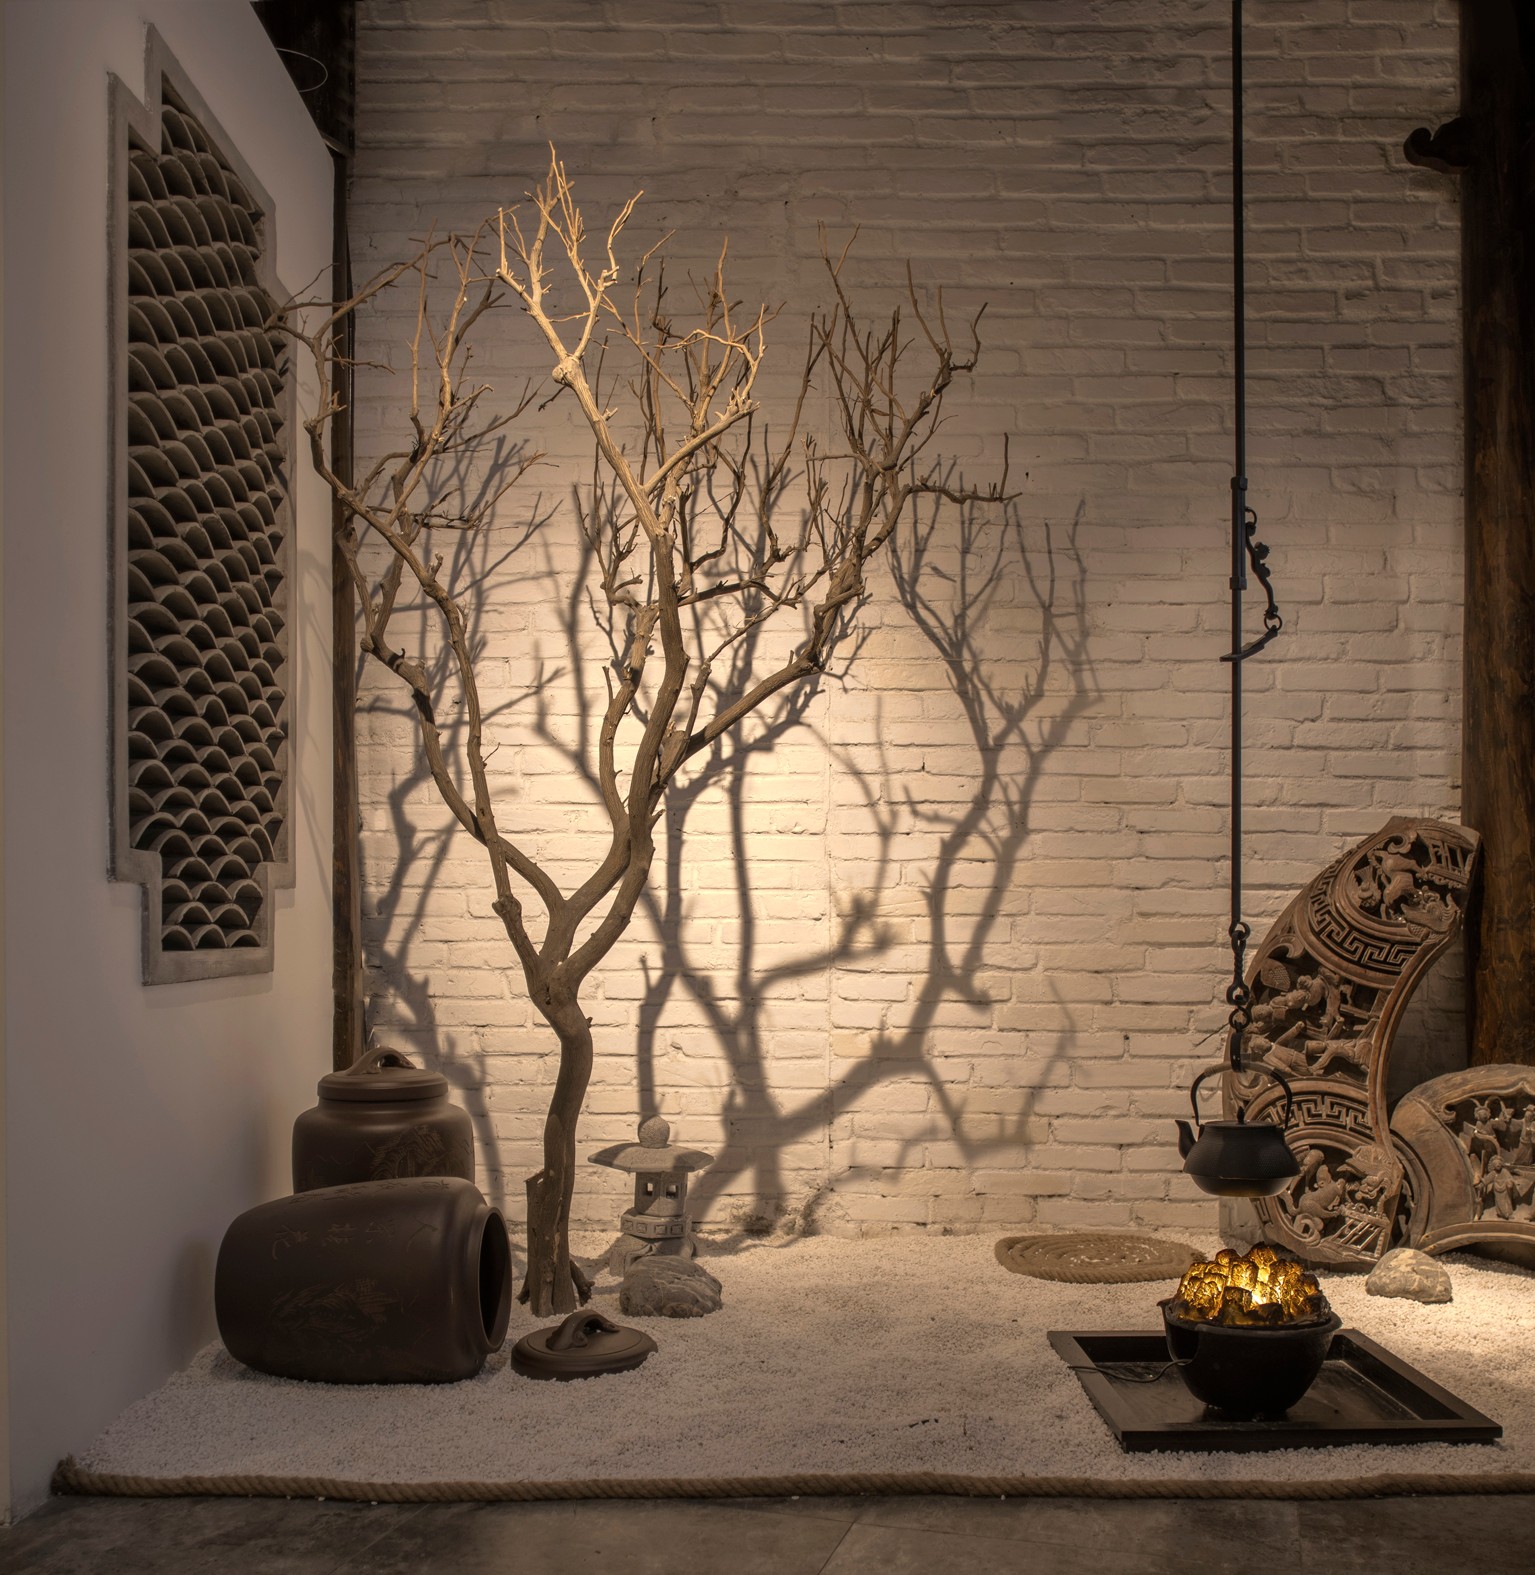 布料、木材、陶瓷、植物、石材,简约素雅古典茶舍,汉中灯光设计拍摄案例 | 简约素雅茶舍灯光设计